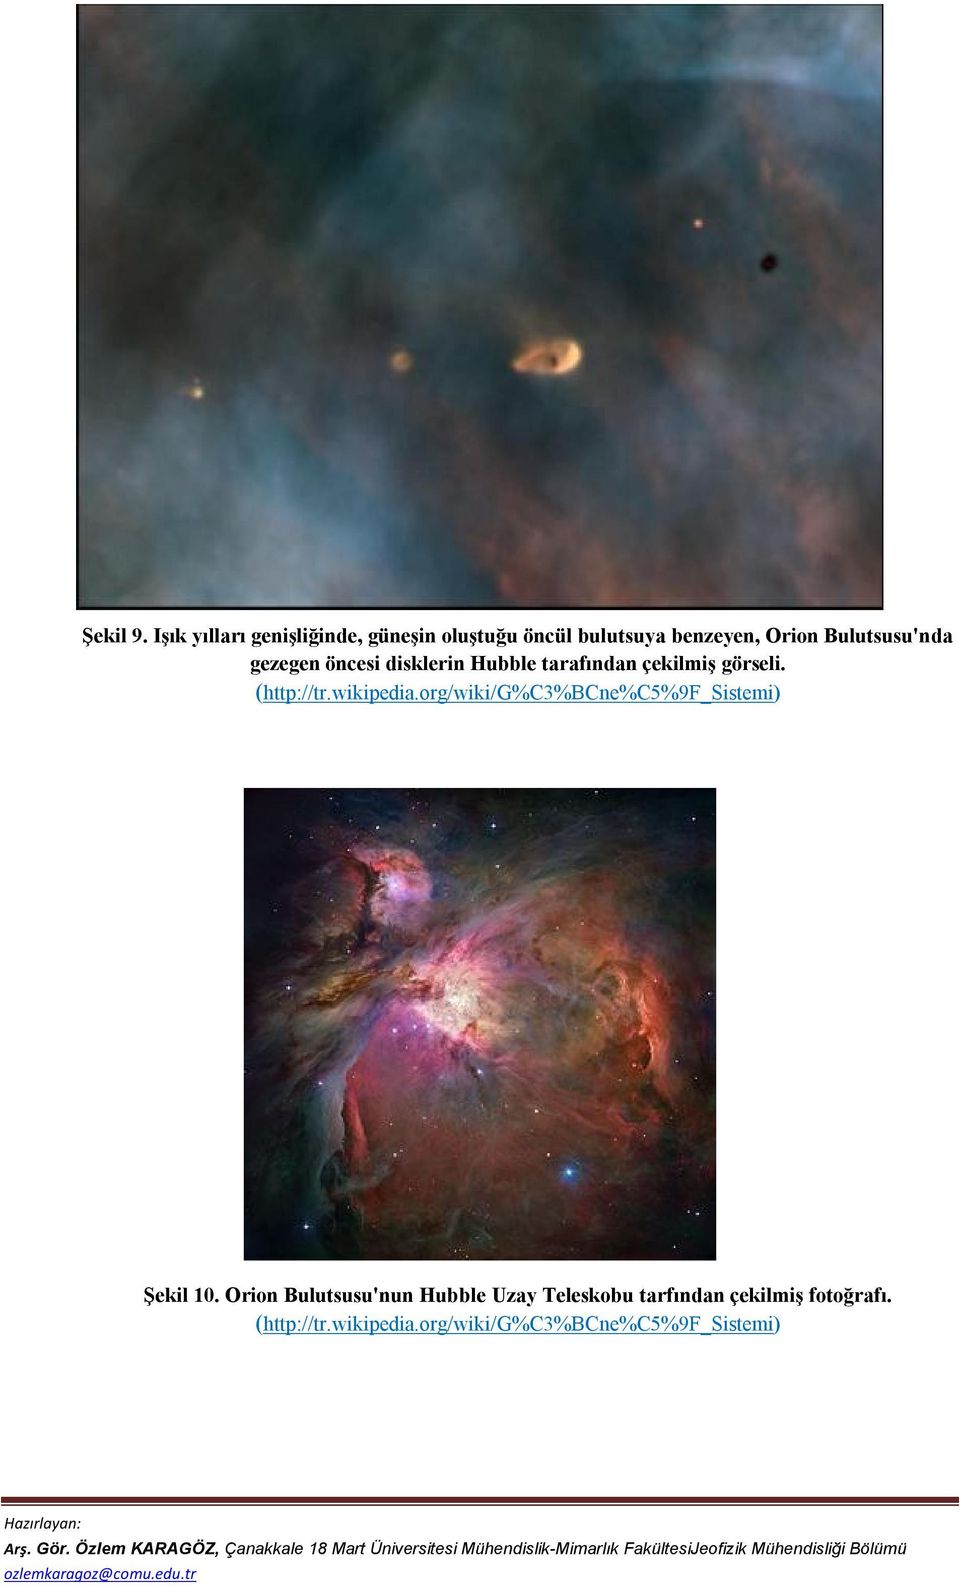 Bulutsusu'nda gezegen öncesi disklerin Hubble tarafından çekilmiş görseli. (http://tr.